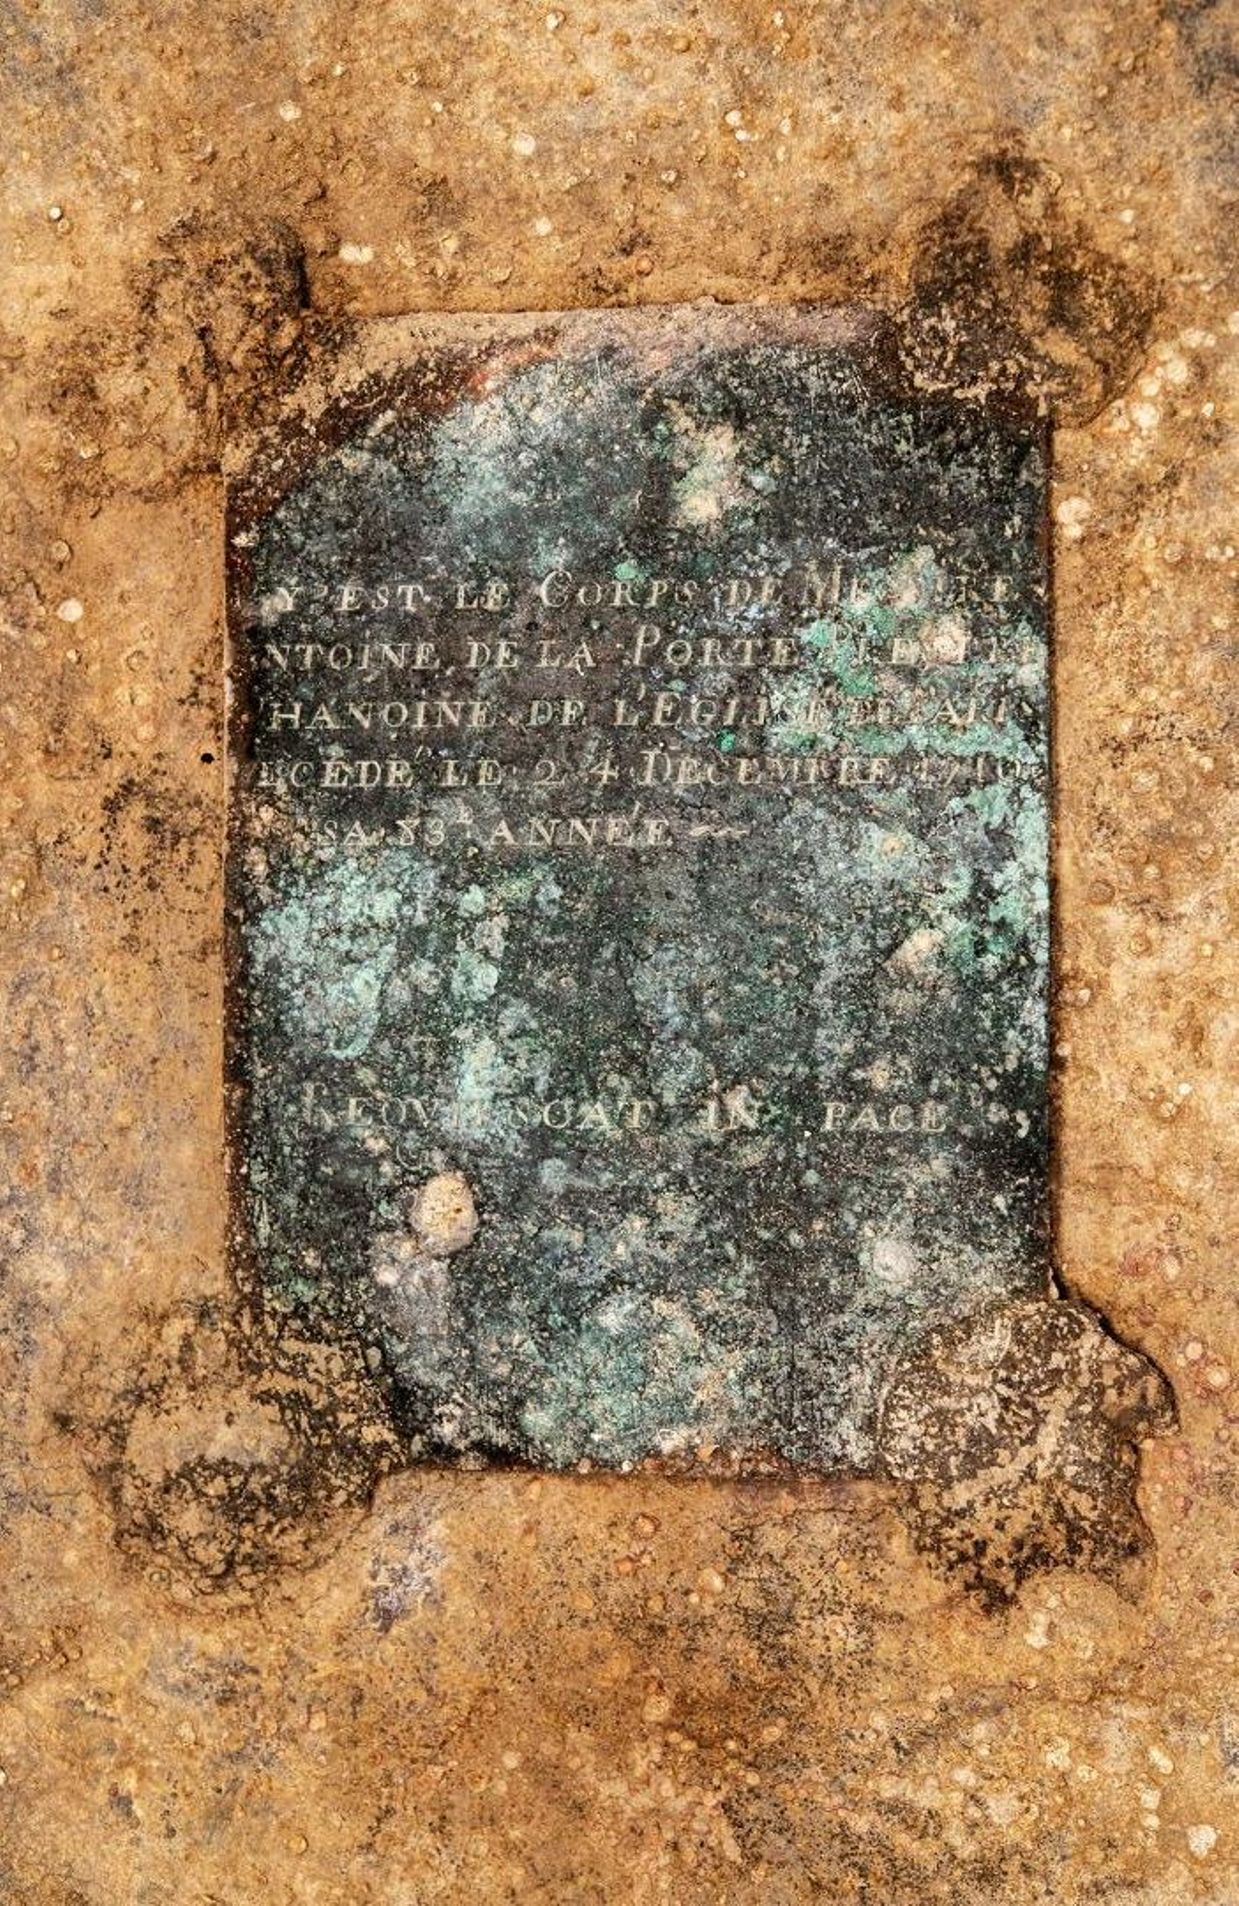 L'épitaphe sur la plaque du sarcophage du chanoine de La Porte.

